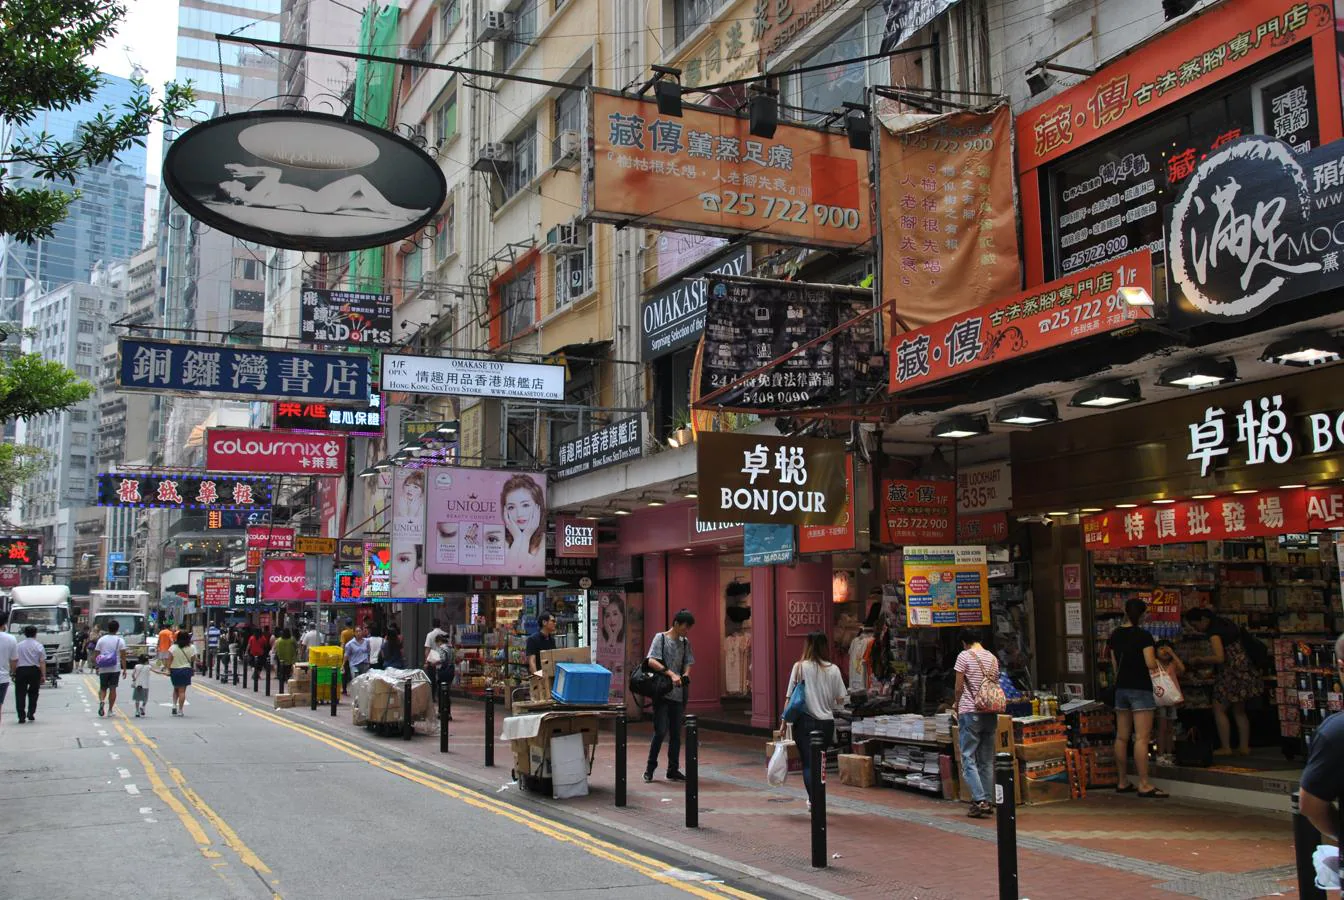 Una de las típicas calles de la ciudad. Cedida por China a Reino Unido en 1842, la isla de Hong Kong permanecieron bajo soberanía británica hasta 1997 cuando volvieron al dominio chino pero manteniendo un sistema político propio y un status especial